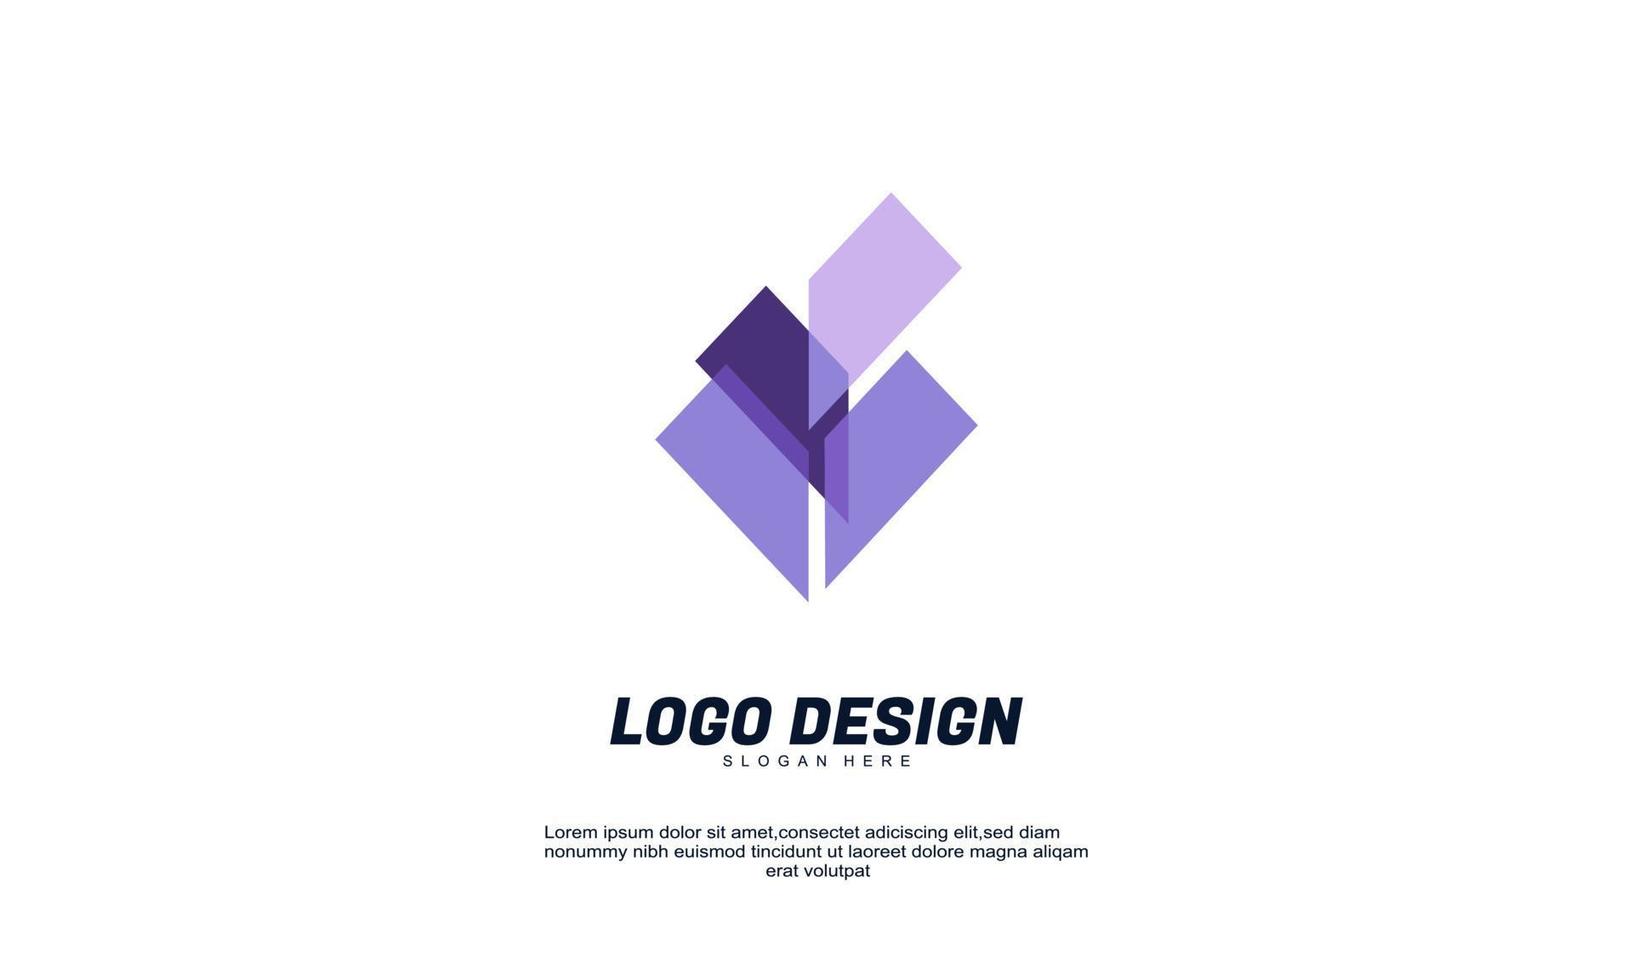 logo di design sfumato multicolore trasparente con marchio aziendale creativo impressionante con design piatto vettore